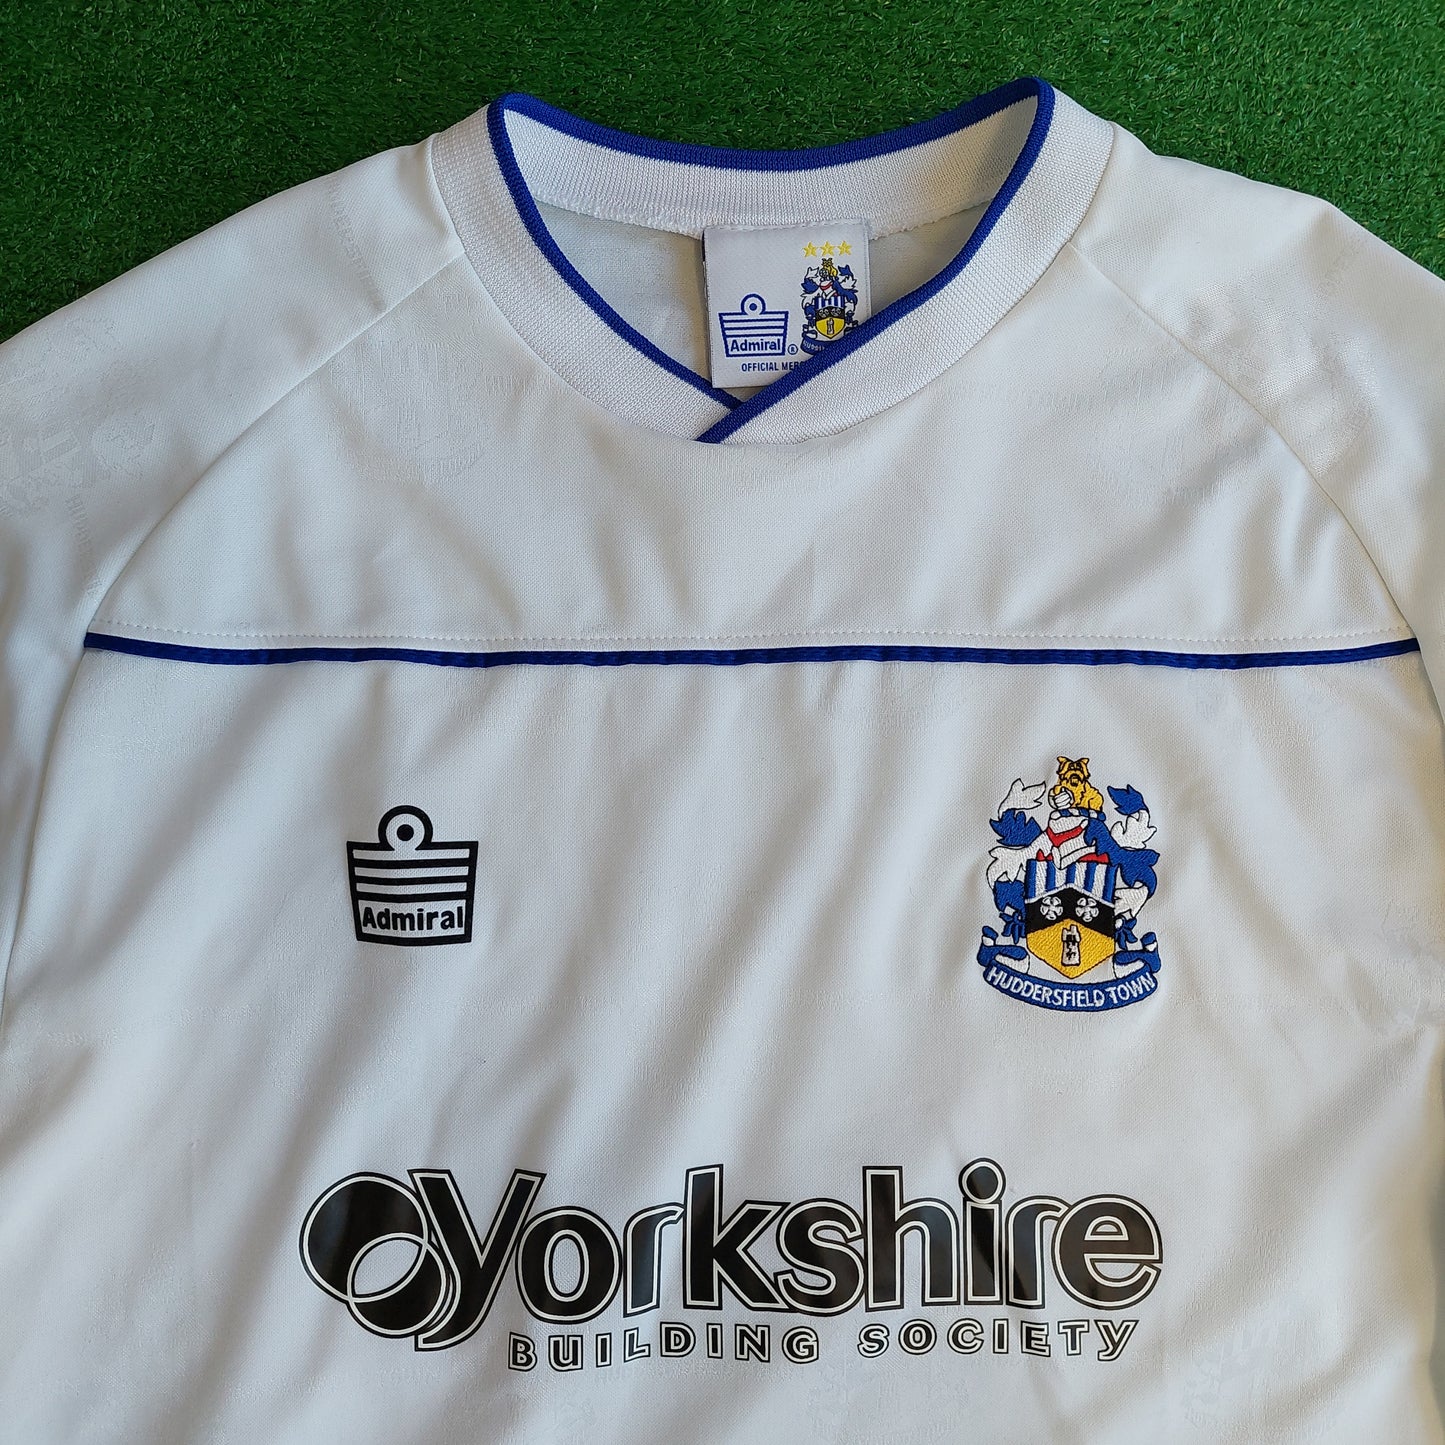 Huddersfield Town 2005/06 Away Shirt (Very Good) - Size L